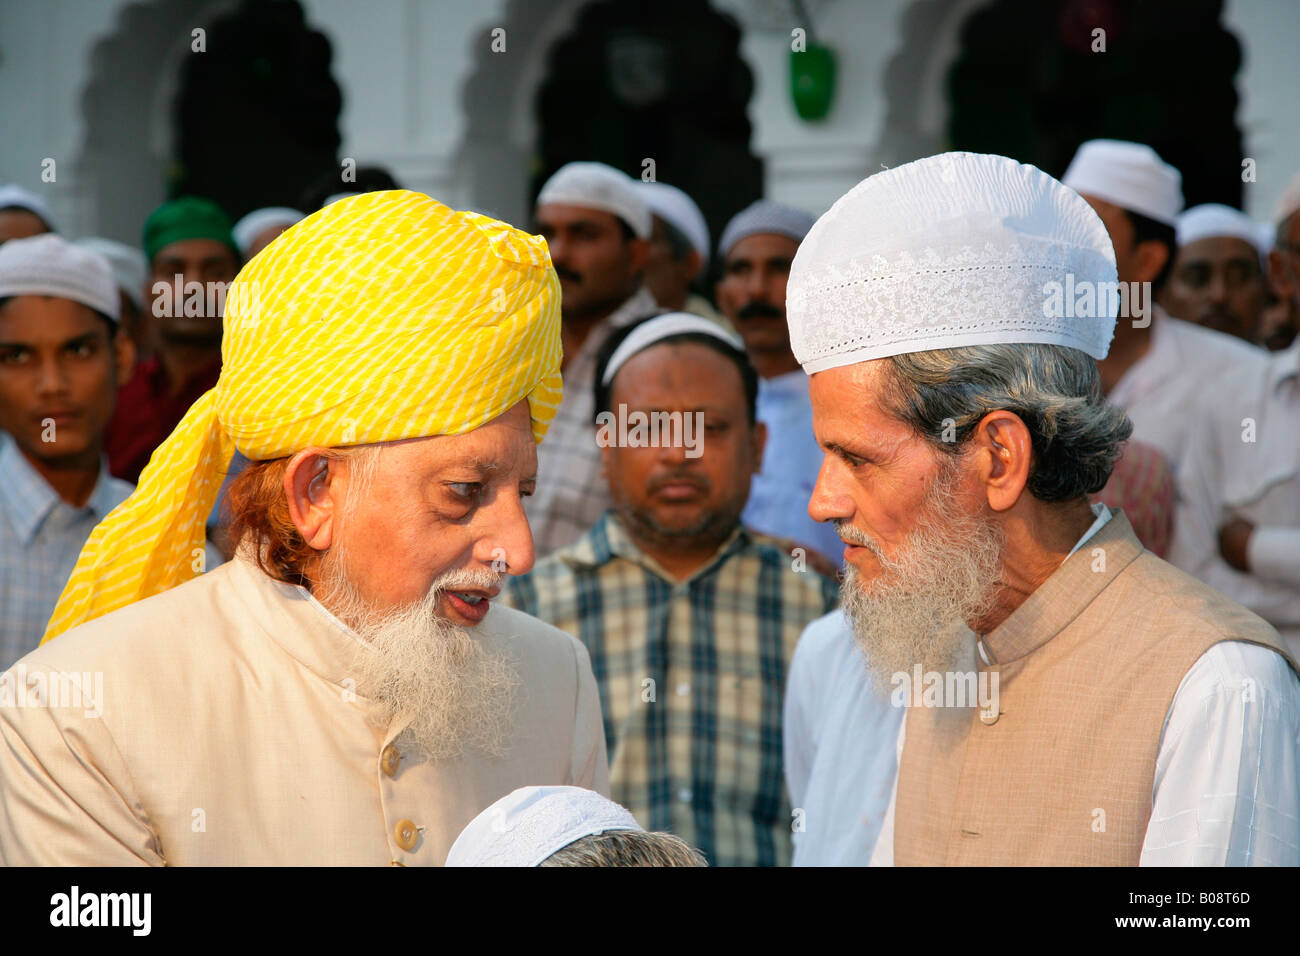 Des dignitaires musulmans, invités à un mariage, Soufi Sufi culte, Bareilly, Uttar Pradesh, Inde, Asie Banque D'Images